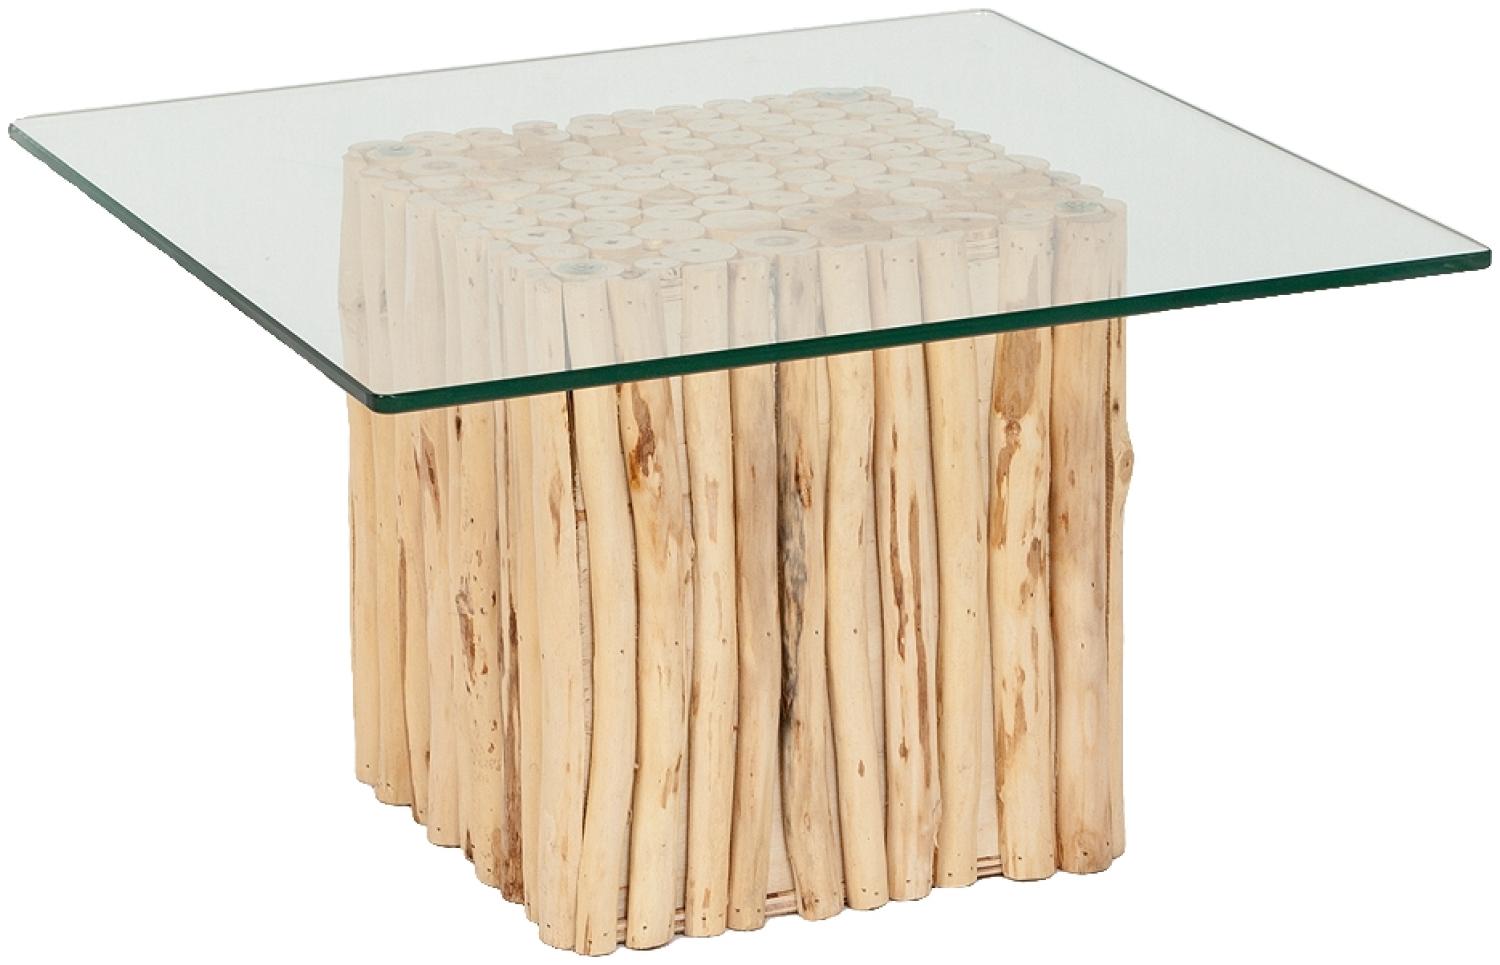 Teak Couchtisch NICO Natural inkl. Glasplatte ca. 70x70cm Wohnzimmertisch Tisch Bild 1